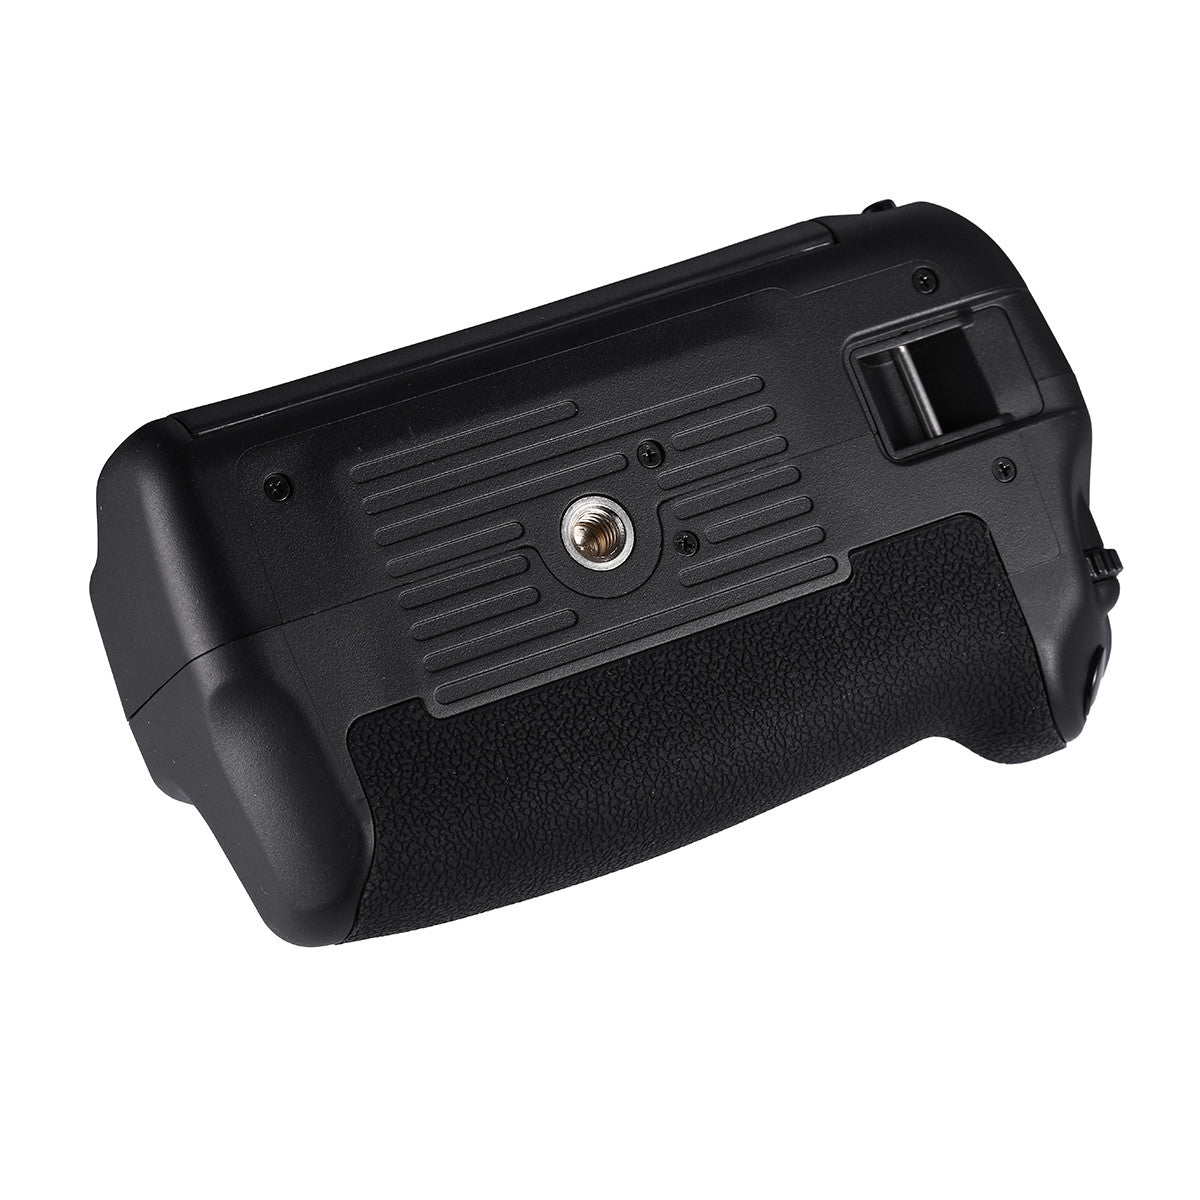 Powerextra BG-E18 Battery Grip for 750D/Rebel T6i, 760D/Rebel T6s Digital Camera